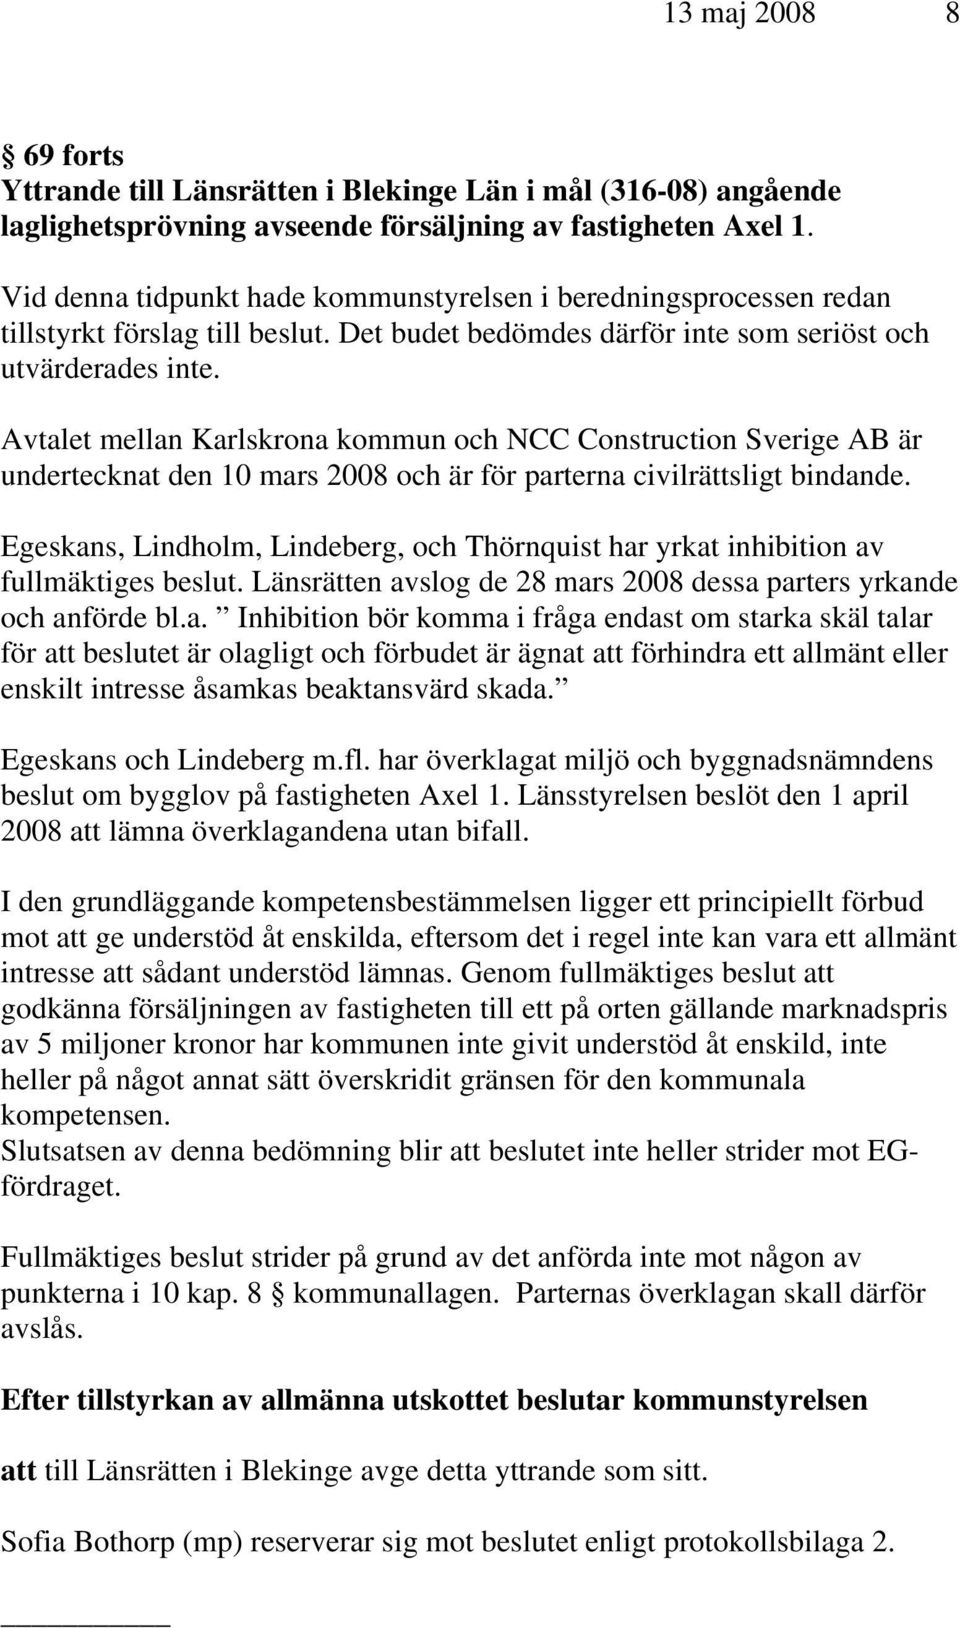 Avtalet mellan Karlskrona kommun och NCC Construction Sverige AB är undertecknat den 10 mars 2008 och är för parterna civilrättsligt bindande.